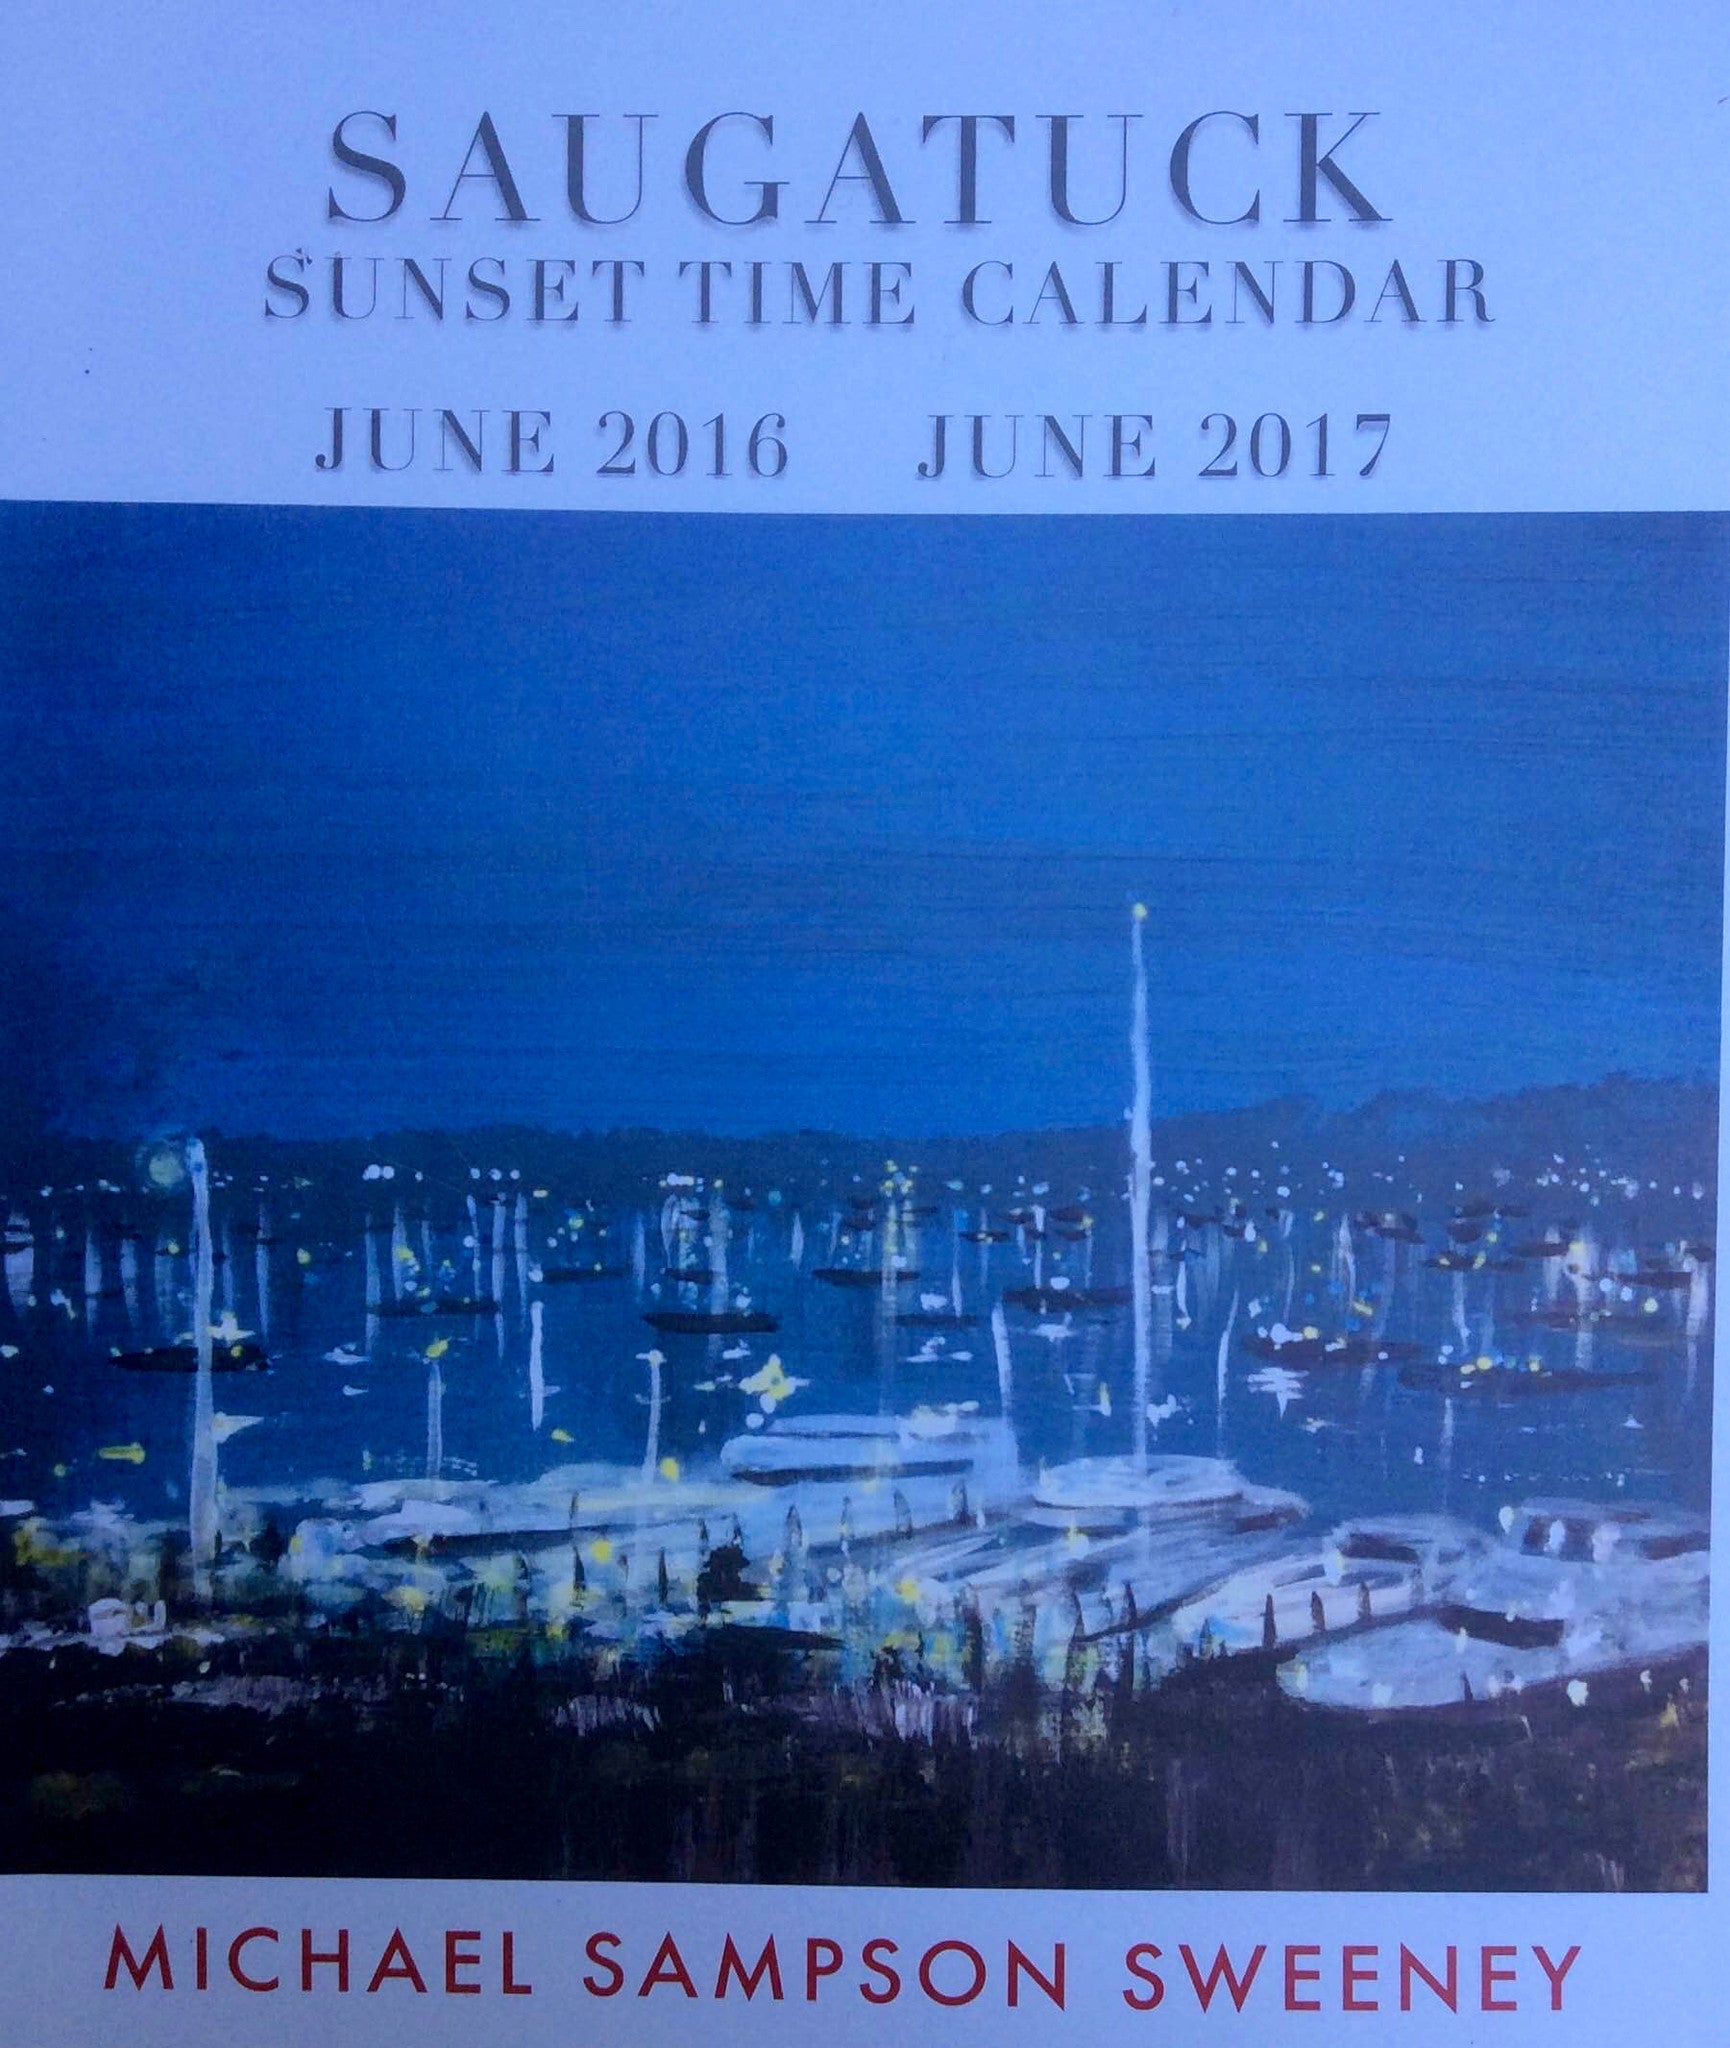 SAUGATUCK Sunset Time Calendar June 2016 - June 2017